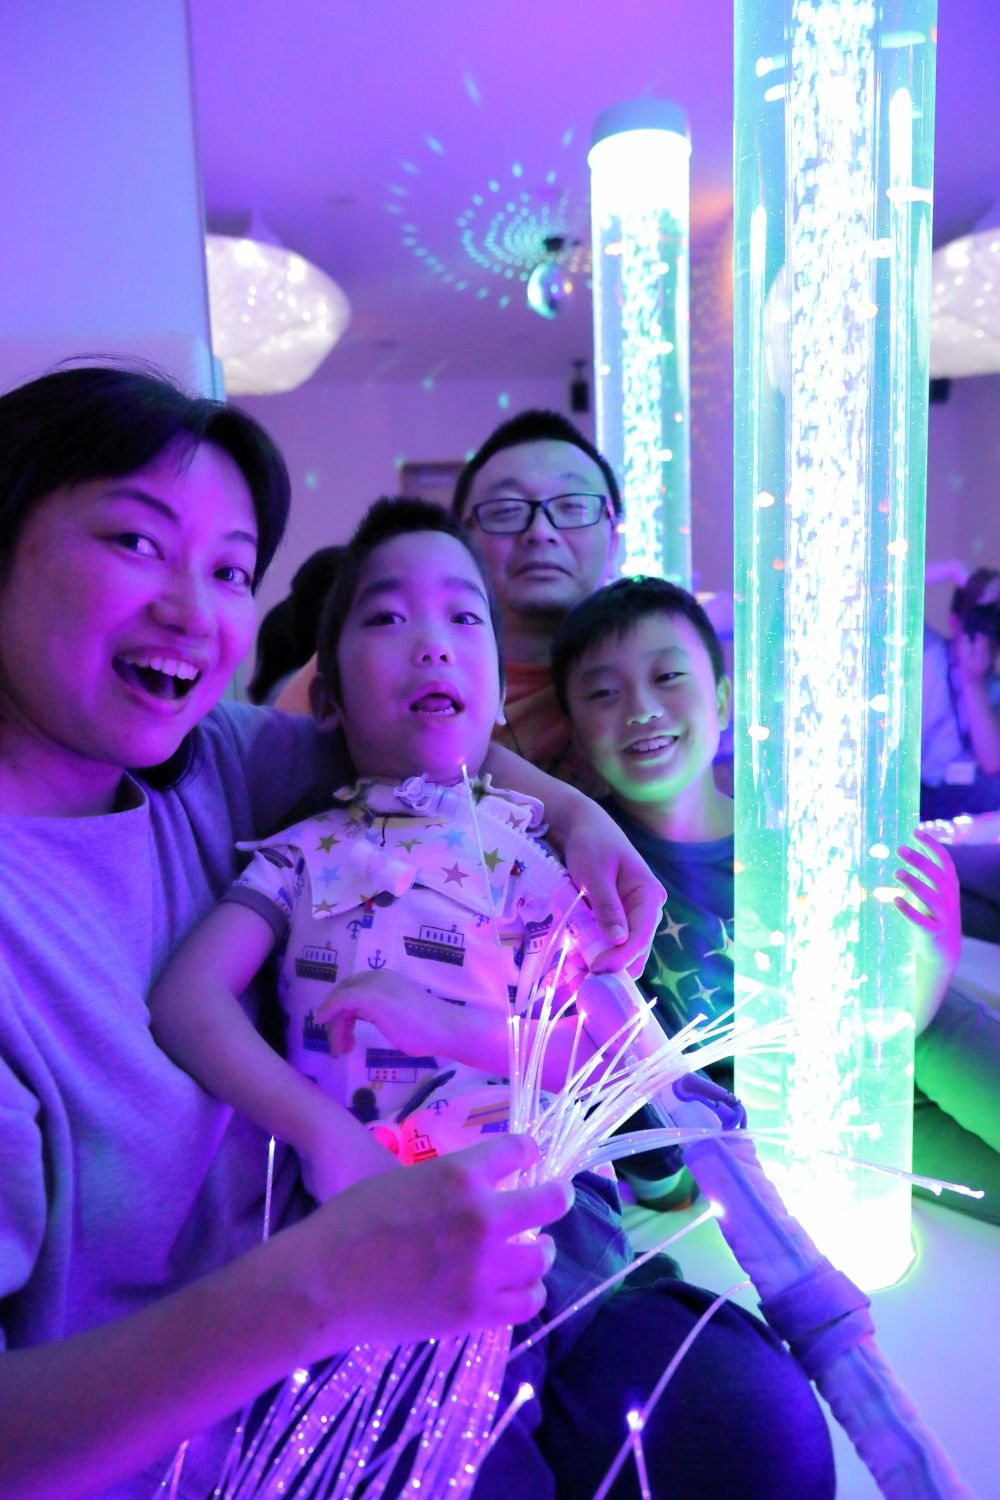 ميازو شينسوكيه يلعب في غرفة المثيرات الحسية مع عائلته. (الصورة مهداة من مؤسسة KidsFam)